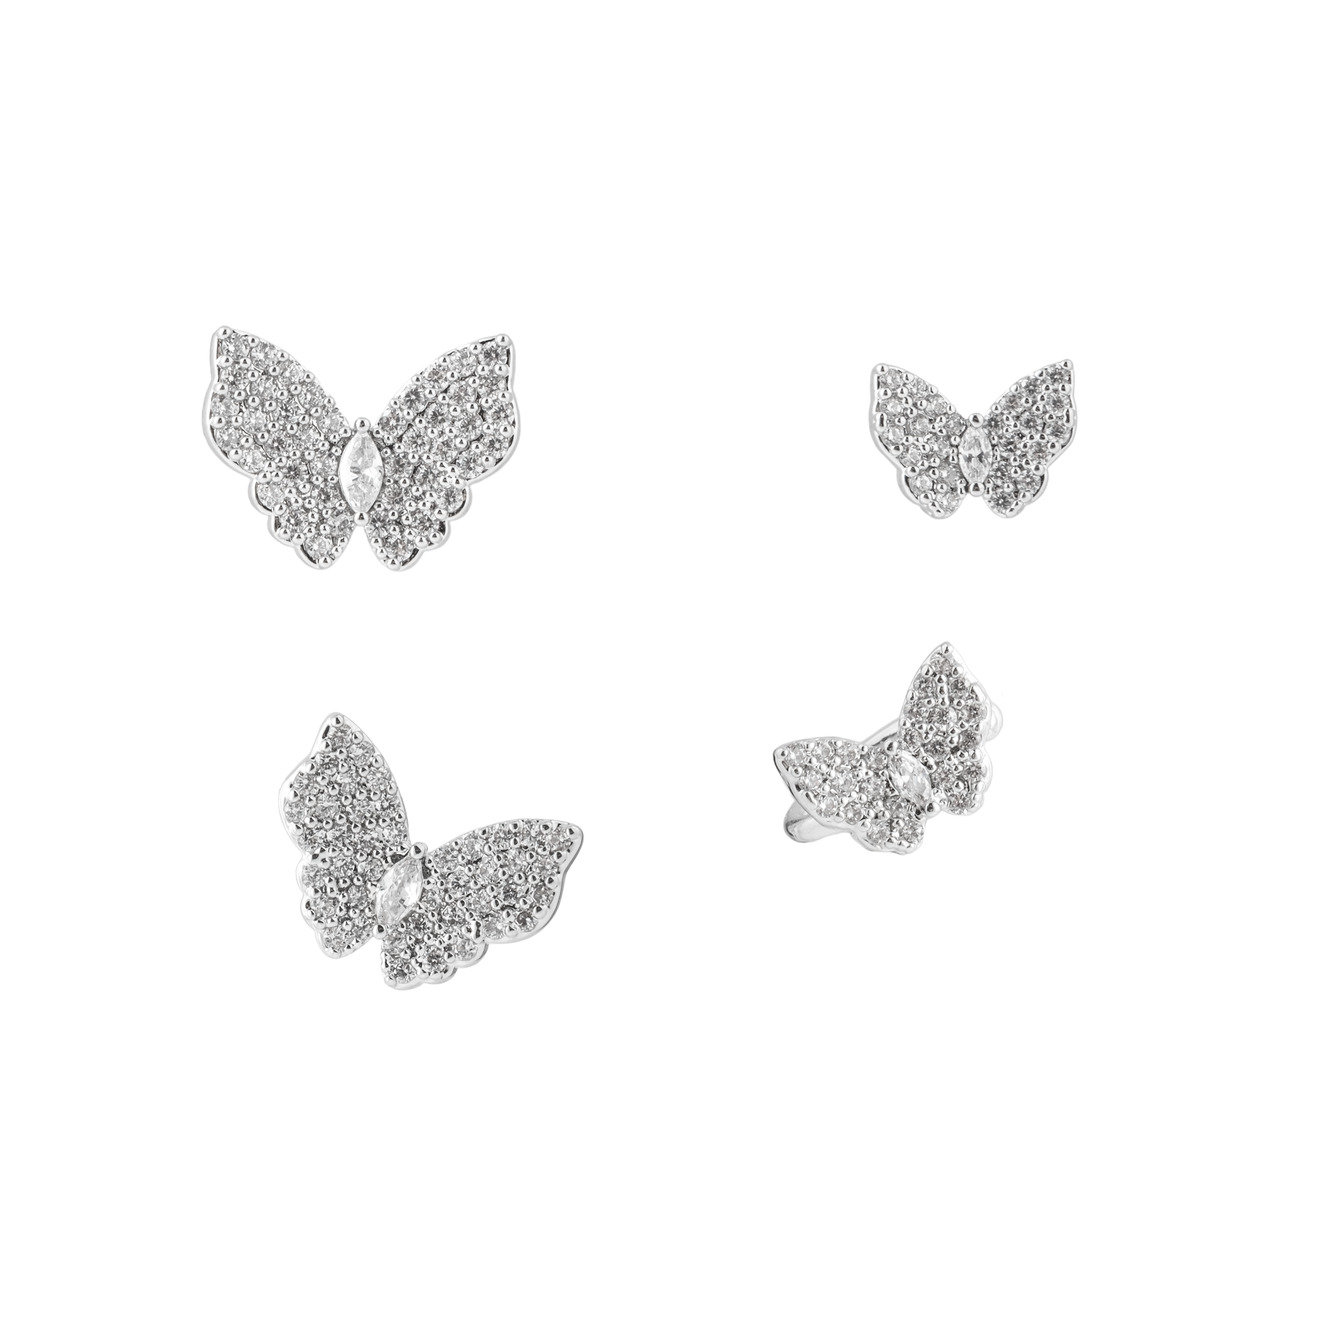 Herald Percy Серебристый сет серег и каффов с бабочками herald percy сет серебристых каффов с паве из кристаллов и сердцами